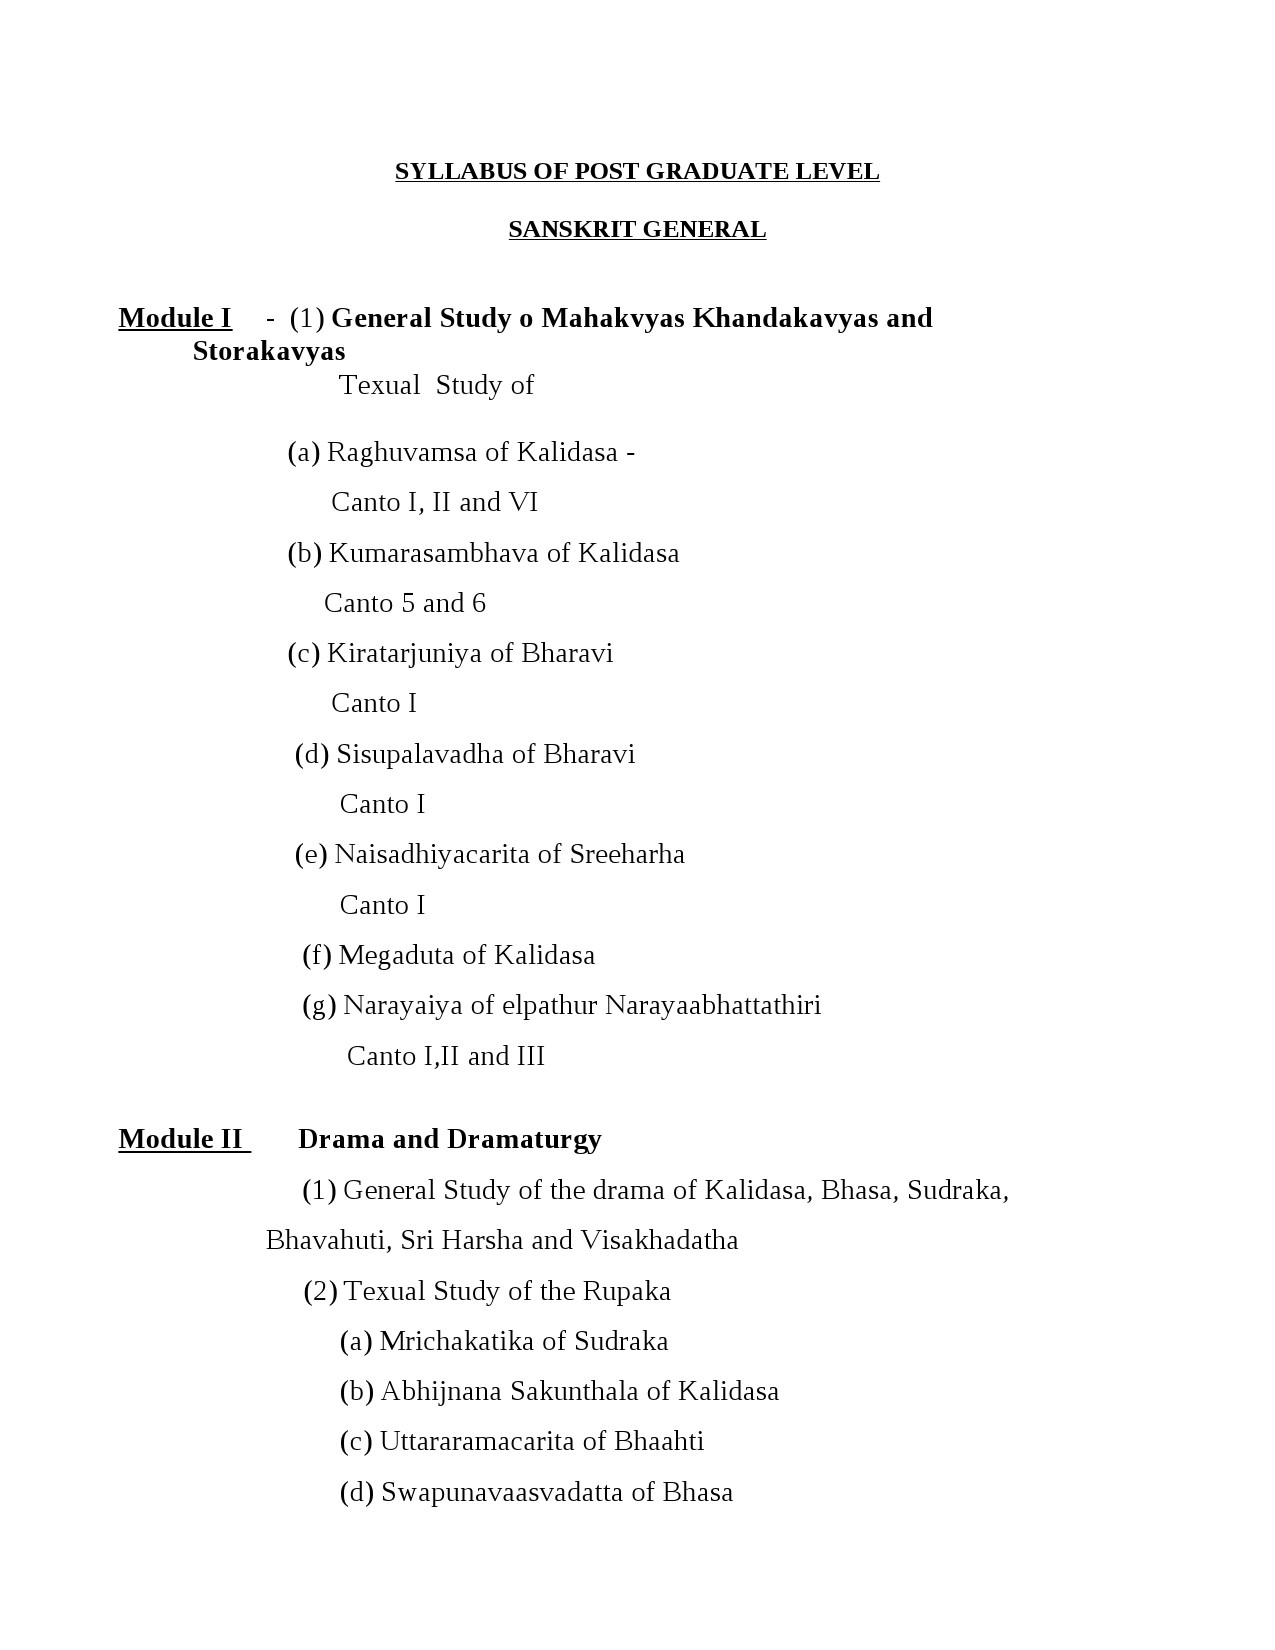 Sanskrit Syllabus for Kerala PSC 2021 Exam - Notification Image 1